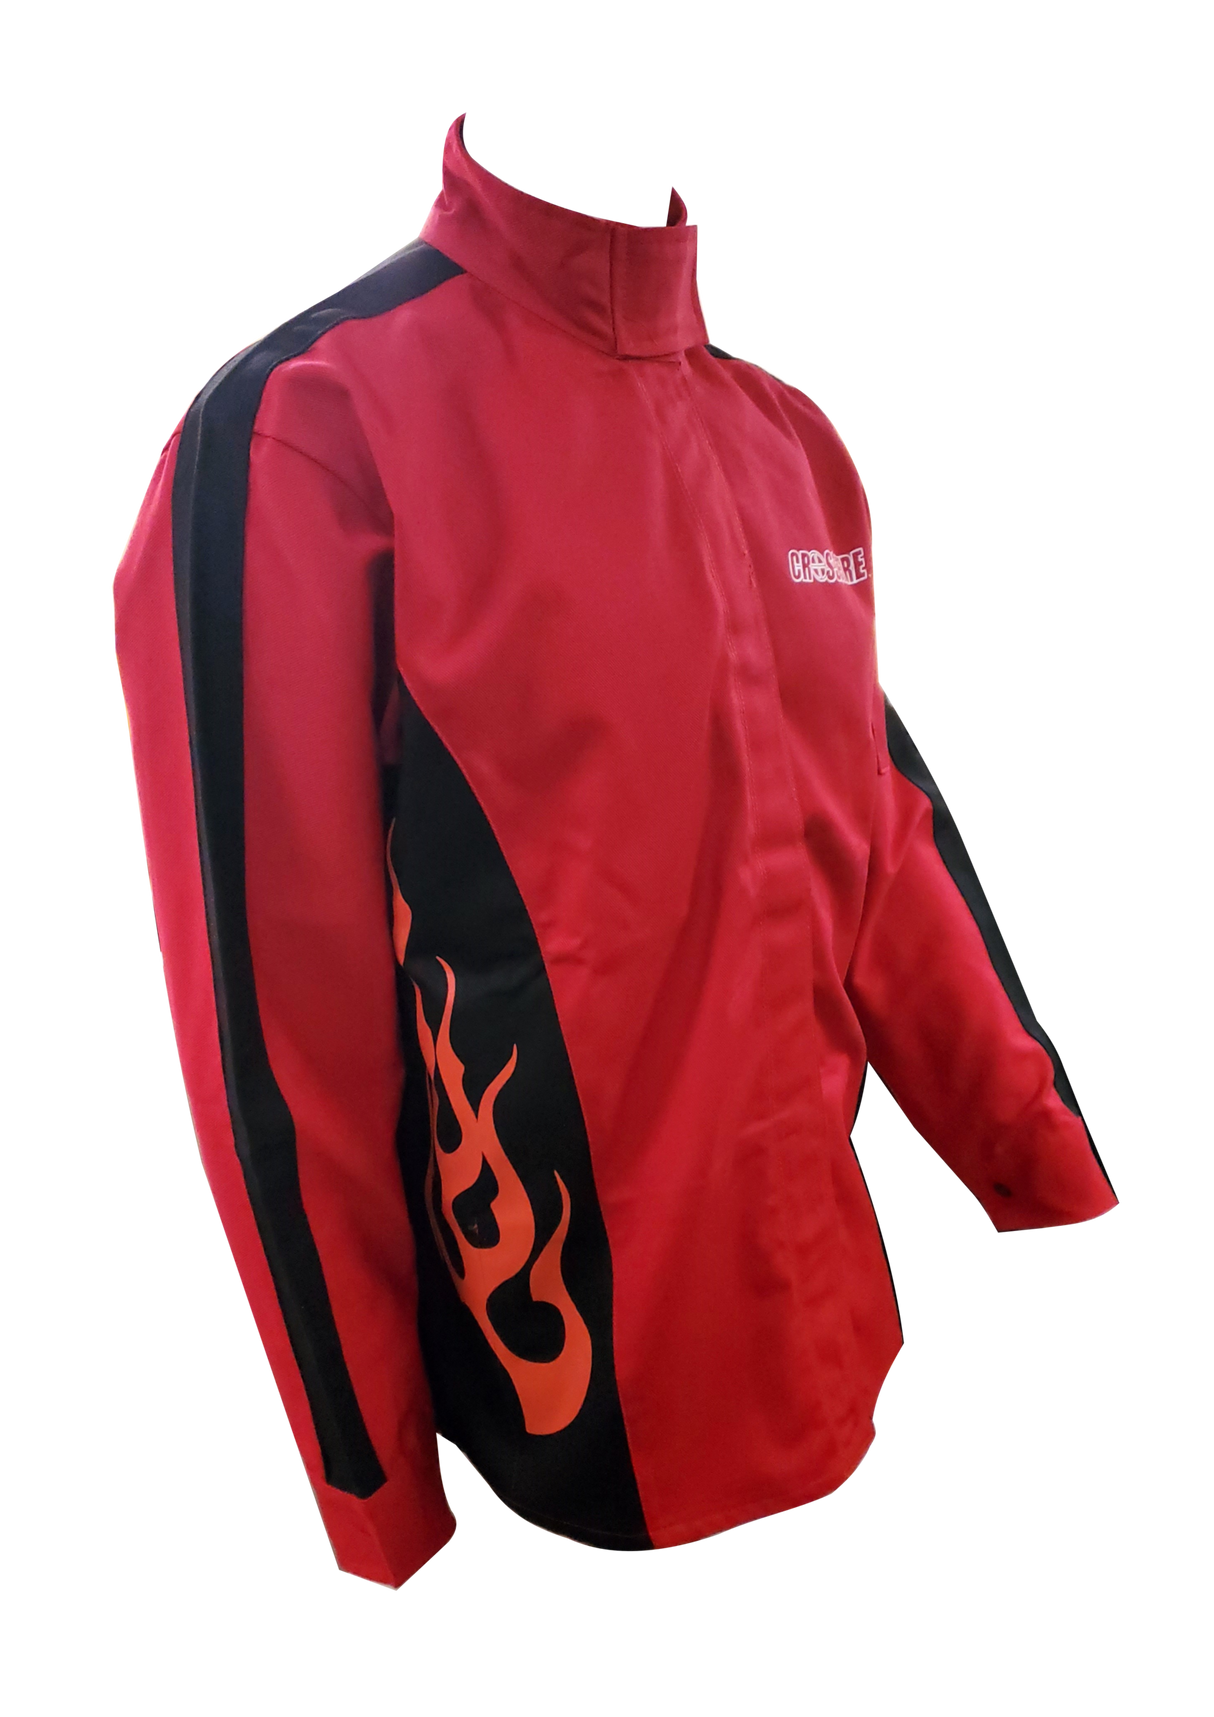 Crossfire Welders Welding Gear Crossfire Red Flame FR Welding Jacket